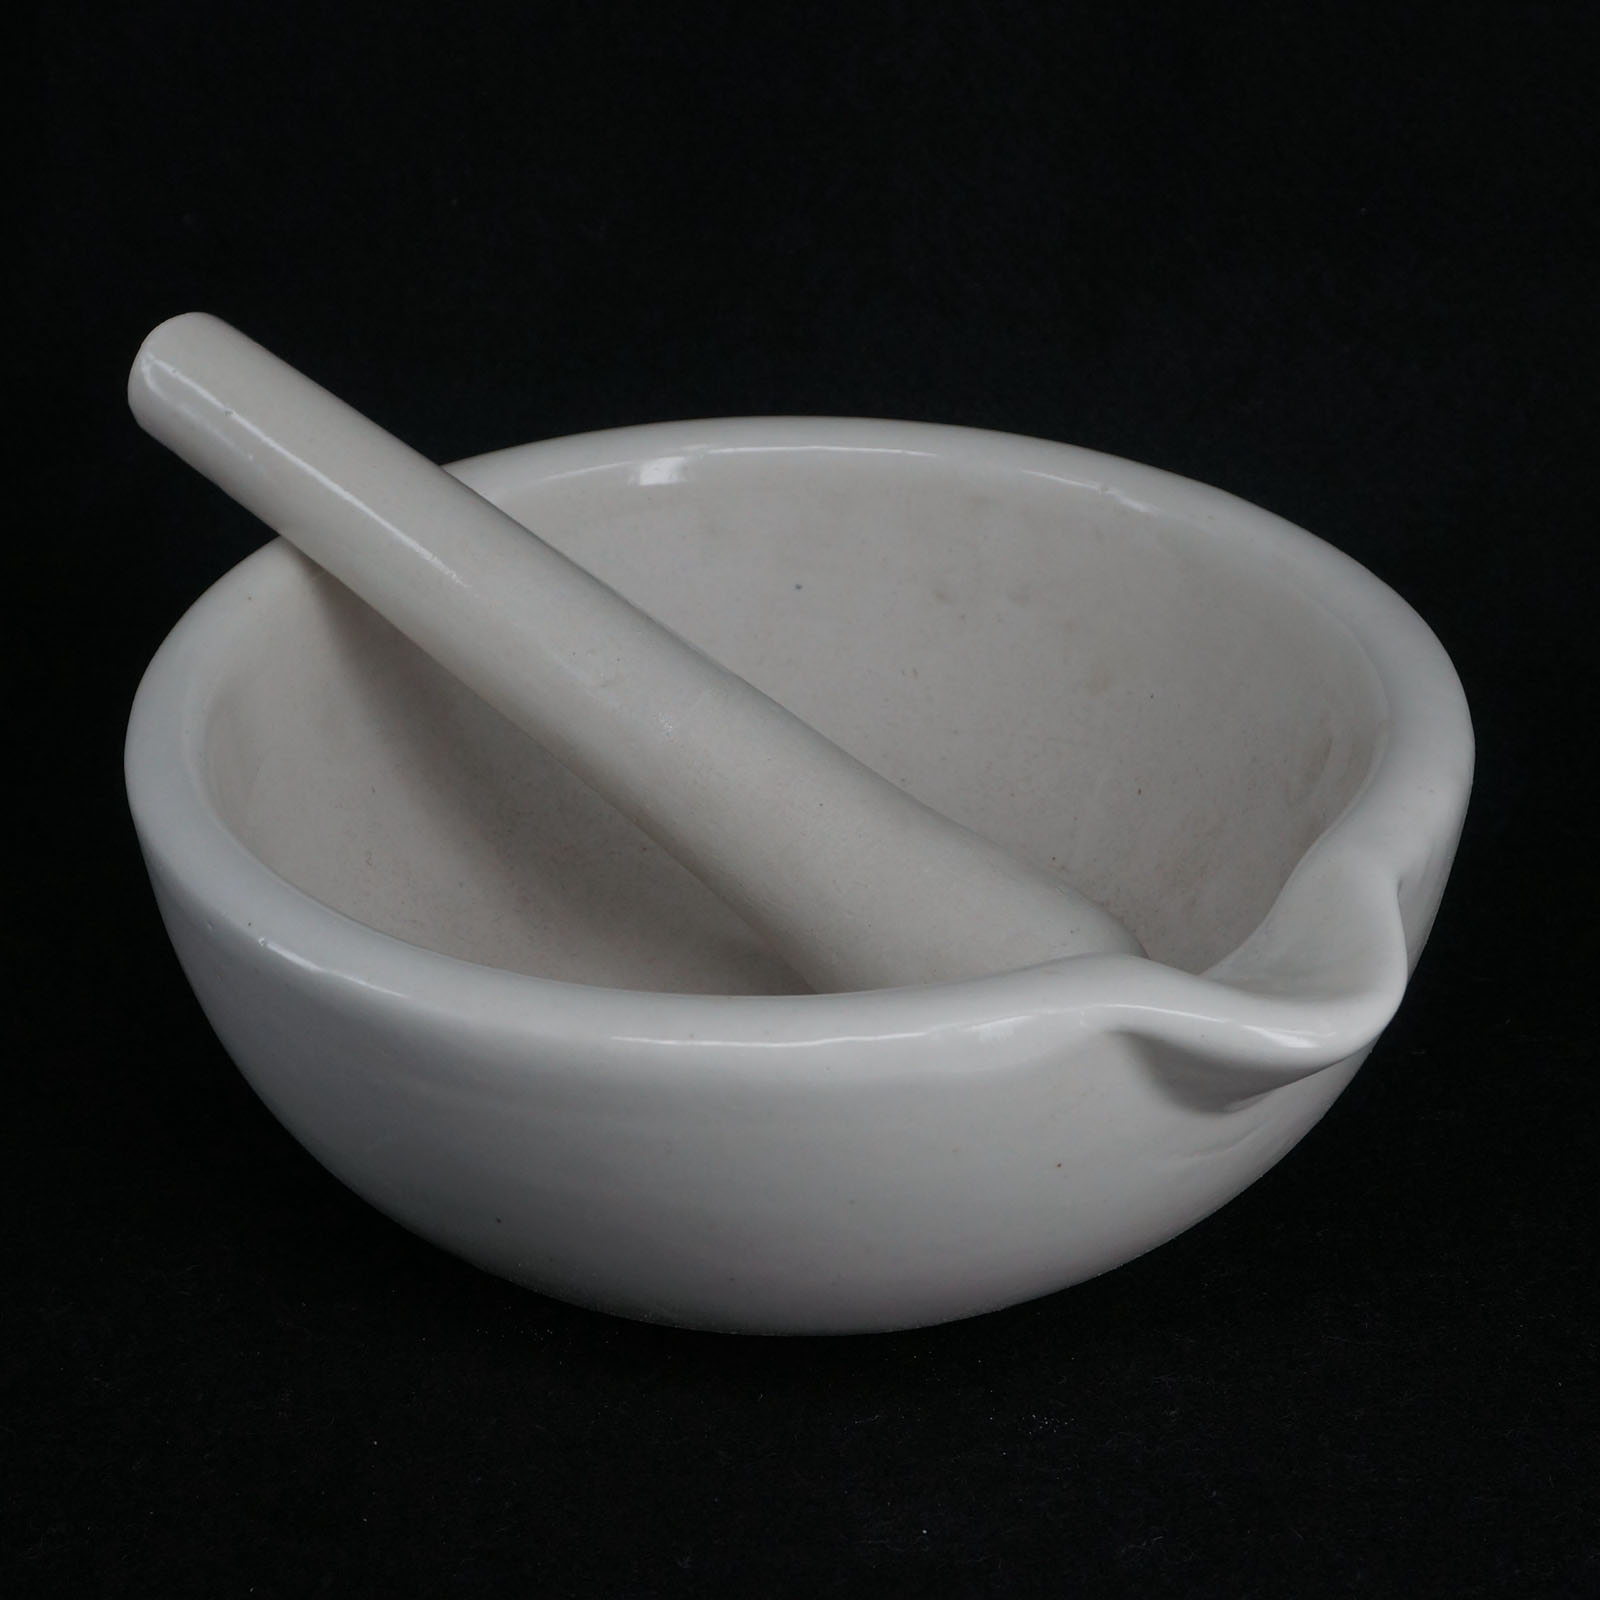 60-305mm Ceramic Porcelain Mortar And Pestle Mix Grind Bowl Set Herbs Kitchen 